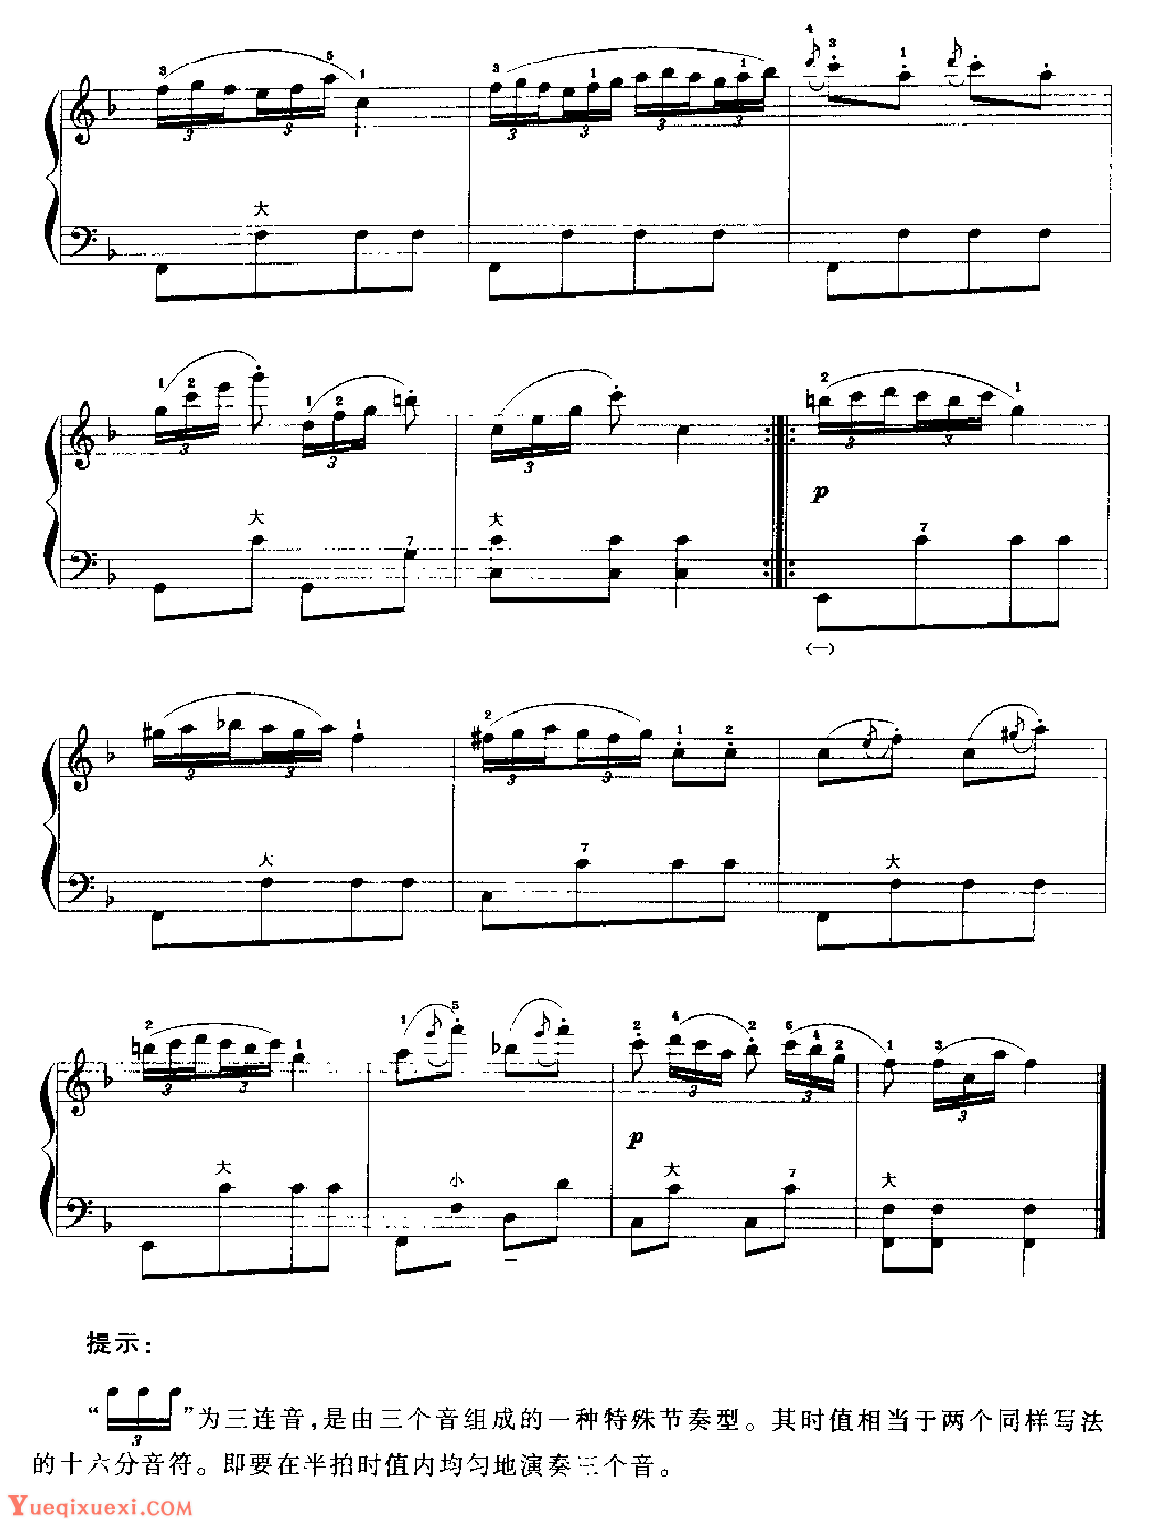 手风琴d旋律小调音阶及琶音练习2